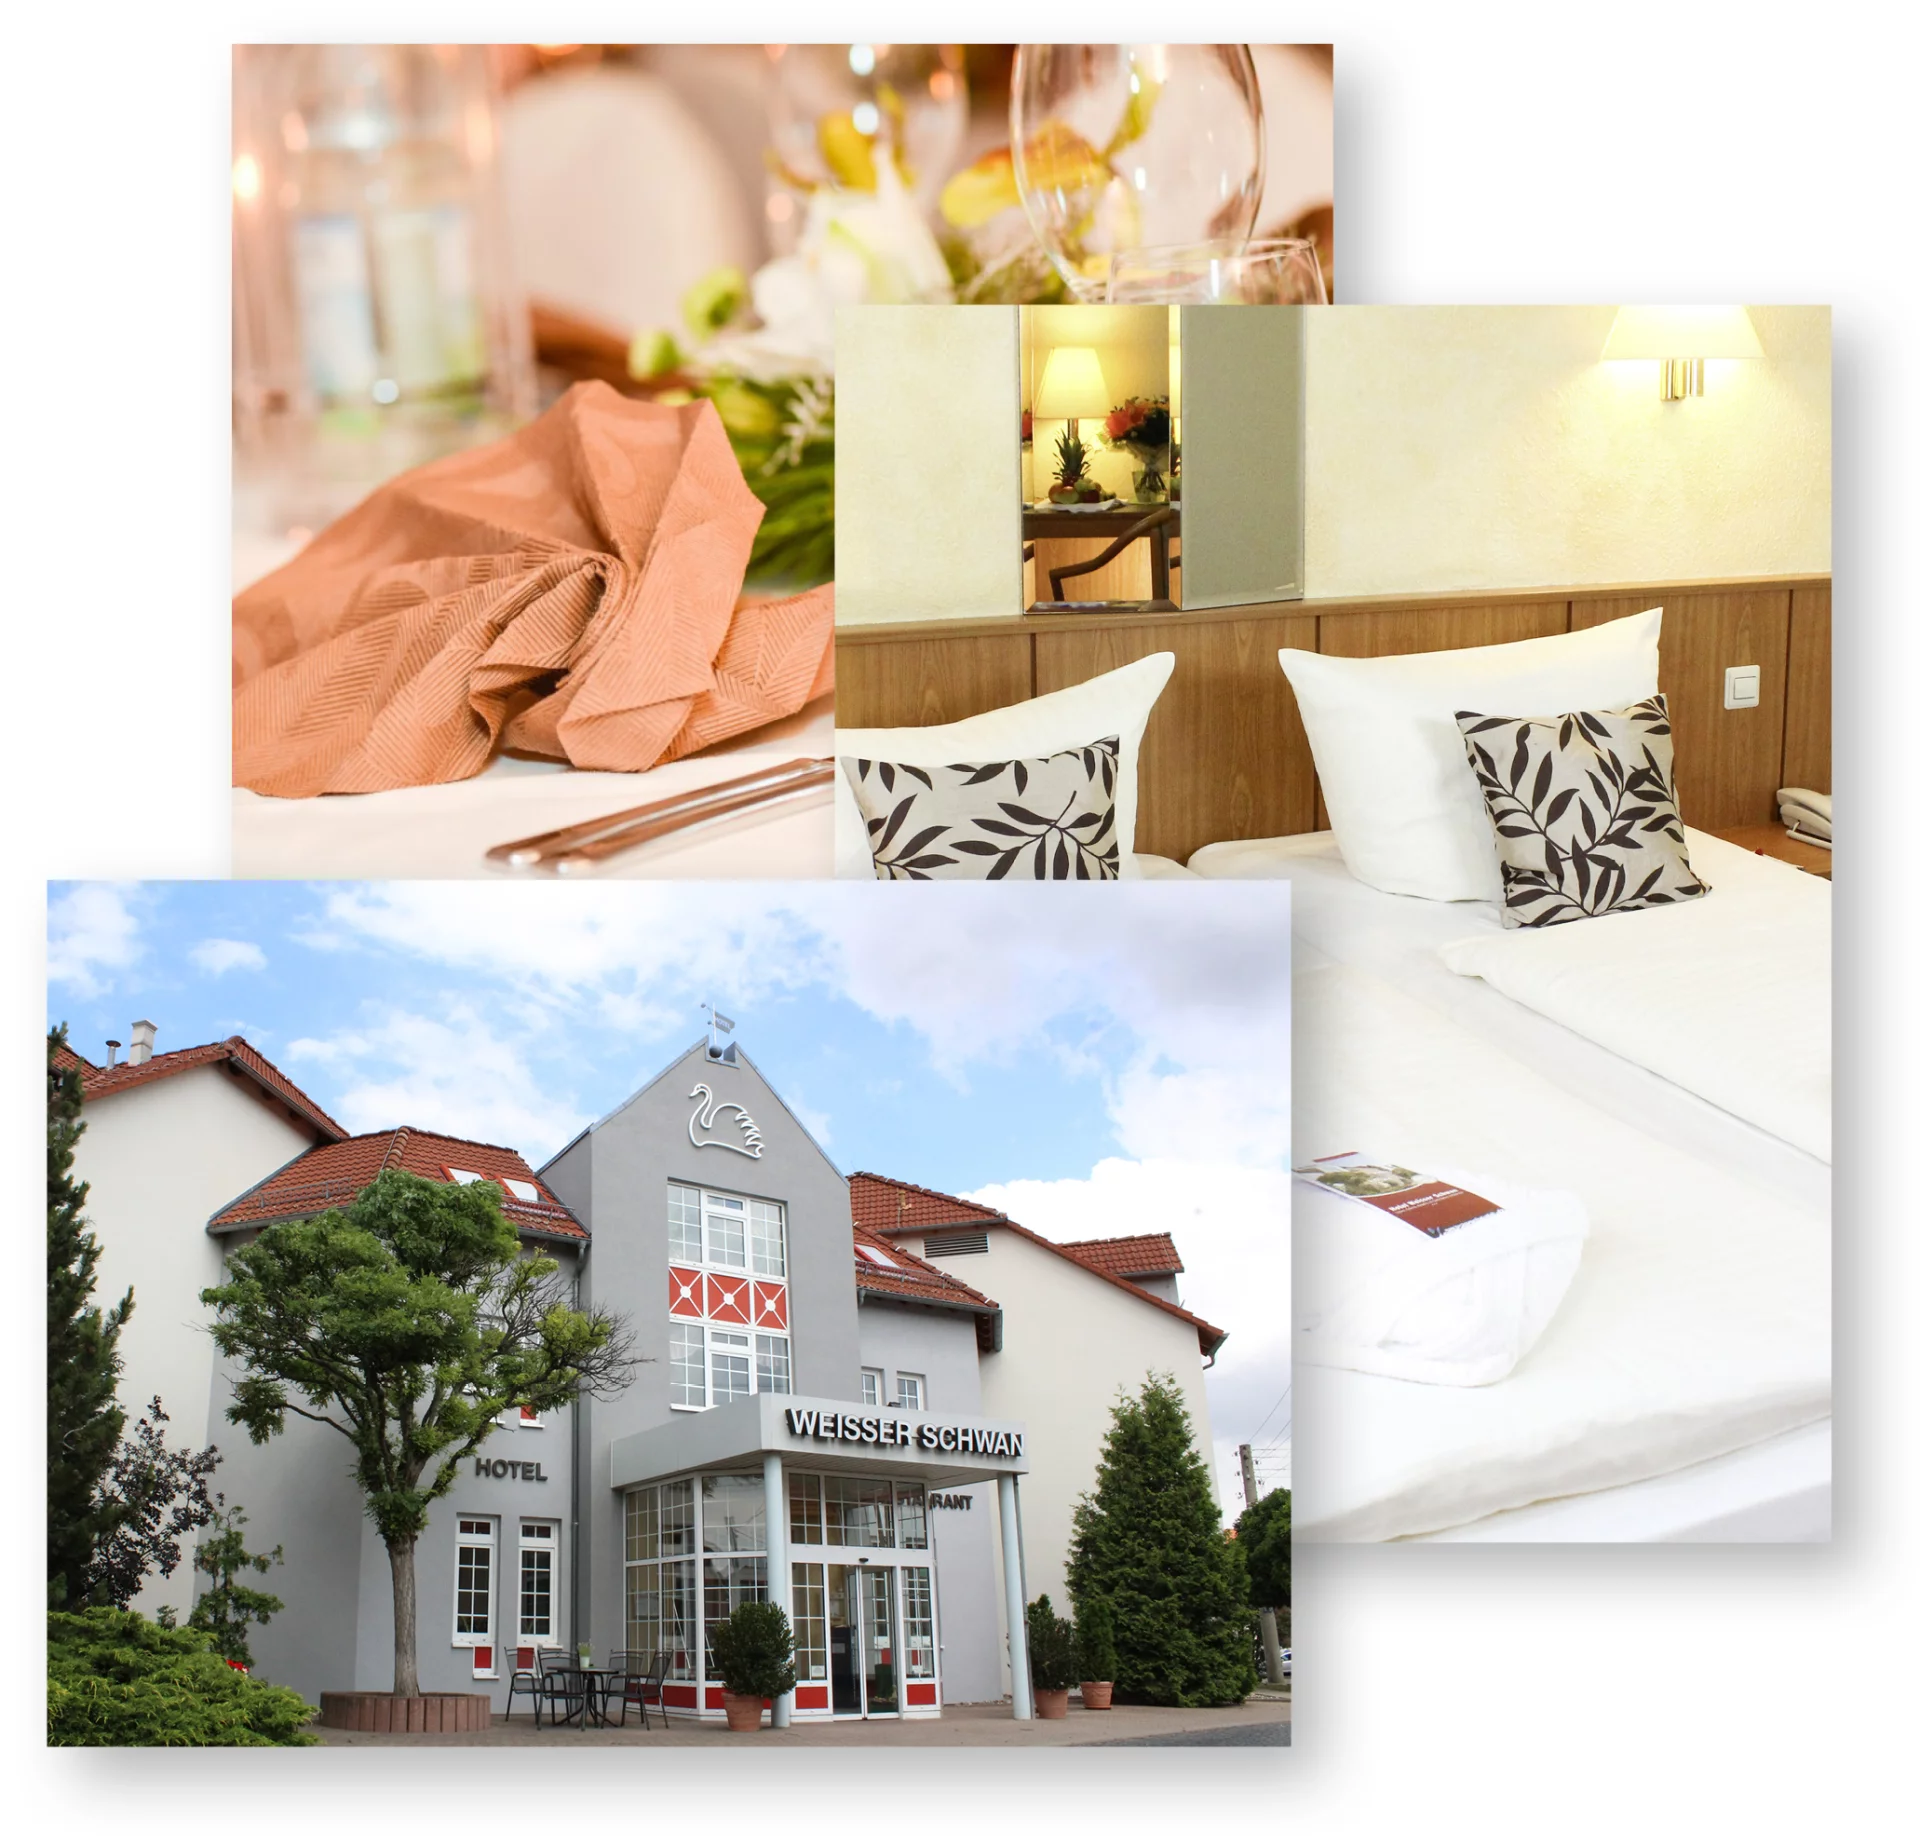 Erfurt Hotel "Weisser Schwan"